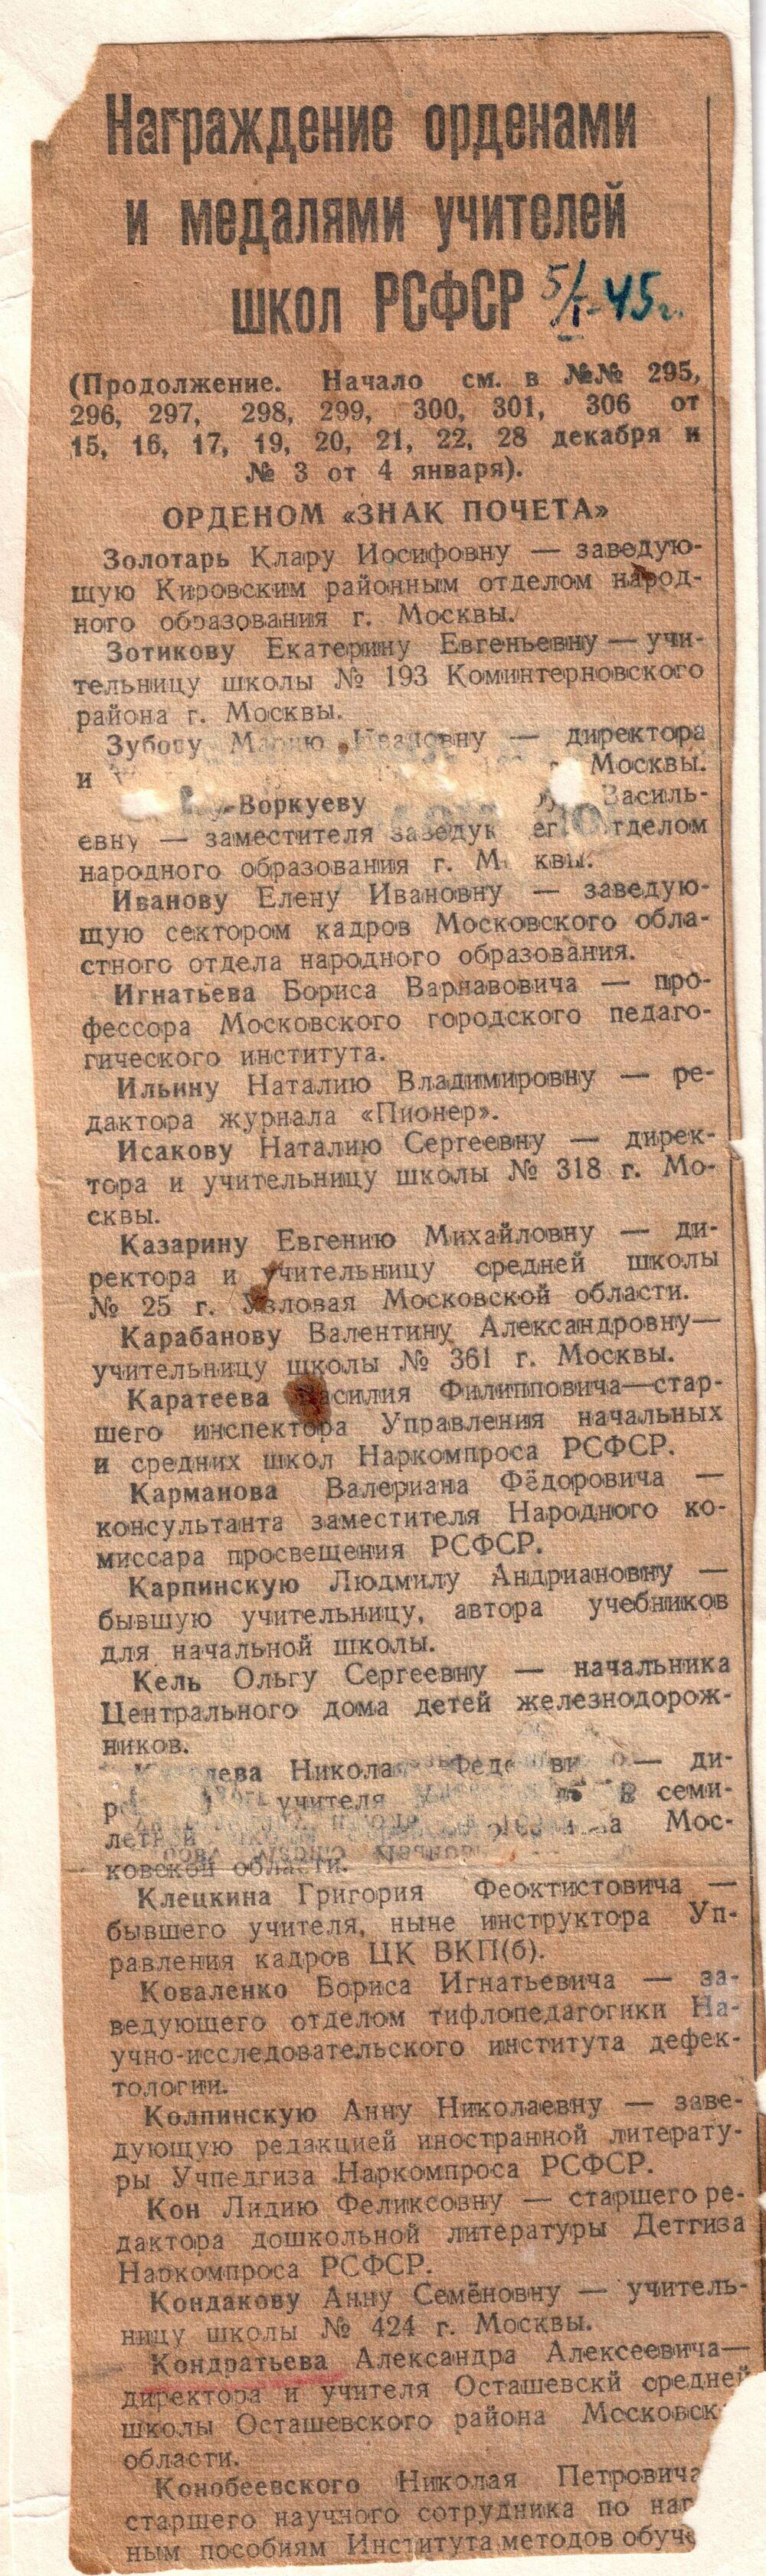 Вырезка из областной газеты от 5 января 1945 года о награждении орденами и медалями учителей школ РСФСР, среди них Кондратьев А. А.